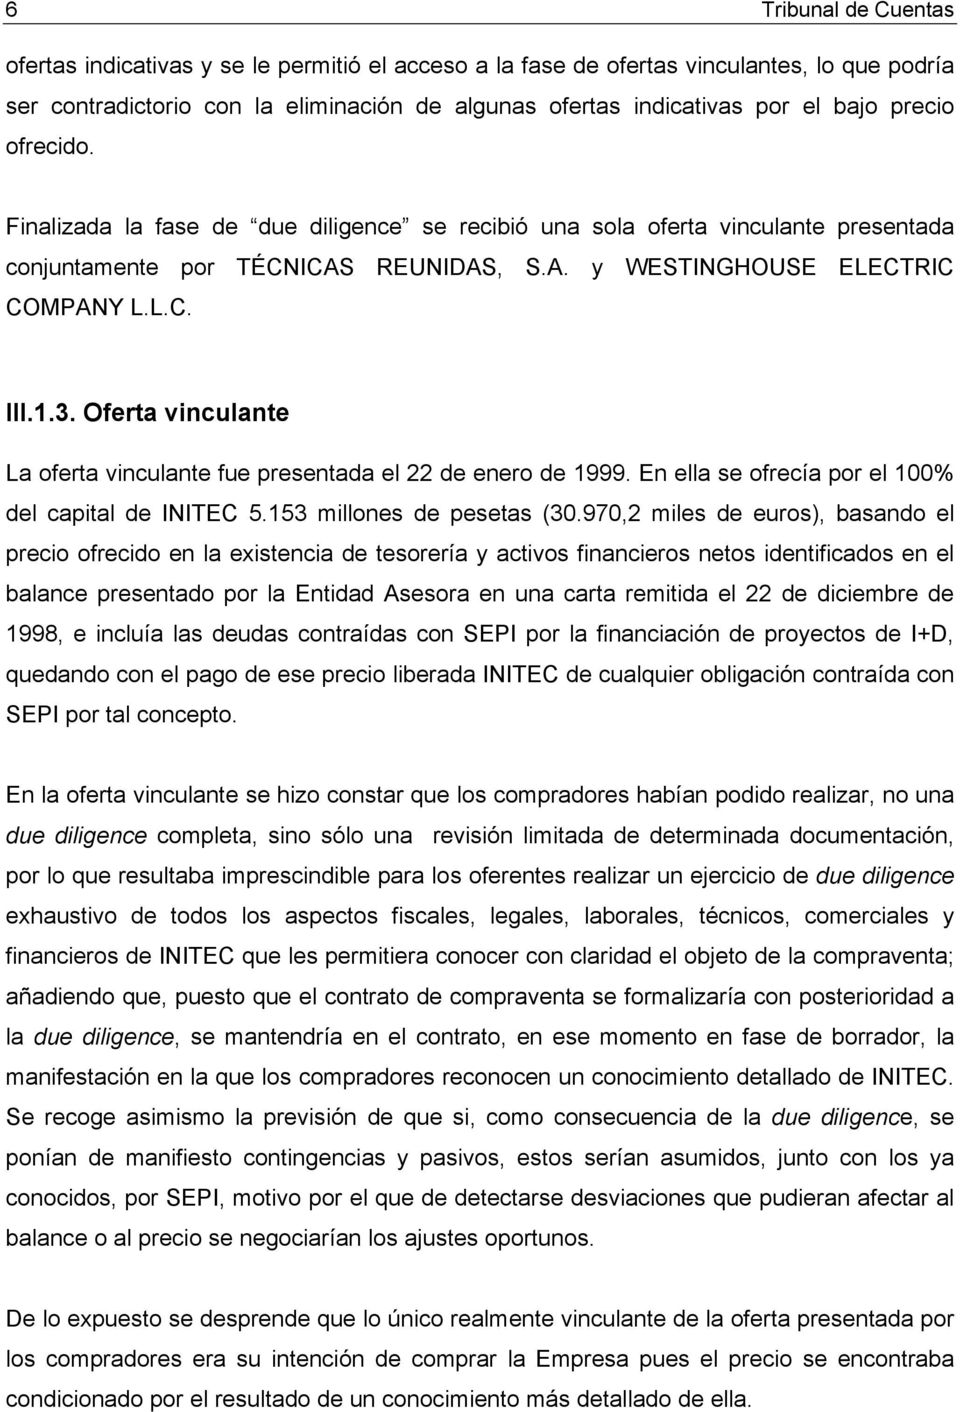 Oferta vinculante La oferta vinculante fue presentada el 22 de enero de 1999. En ella se ofrecía por el 100% del capital de INITEC 5.153 millones de pesetas (30.